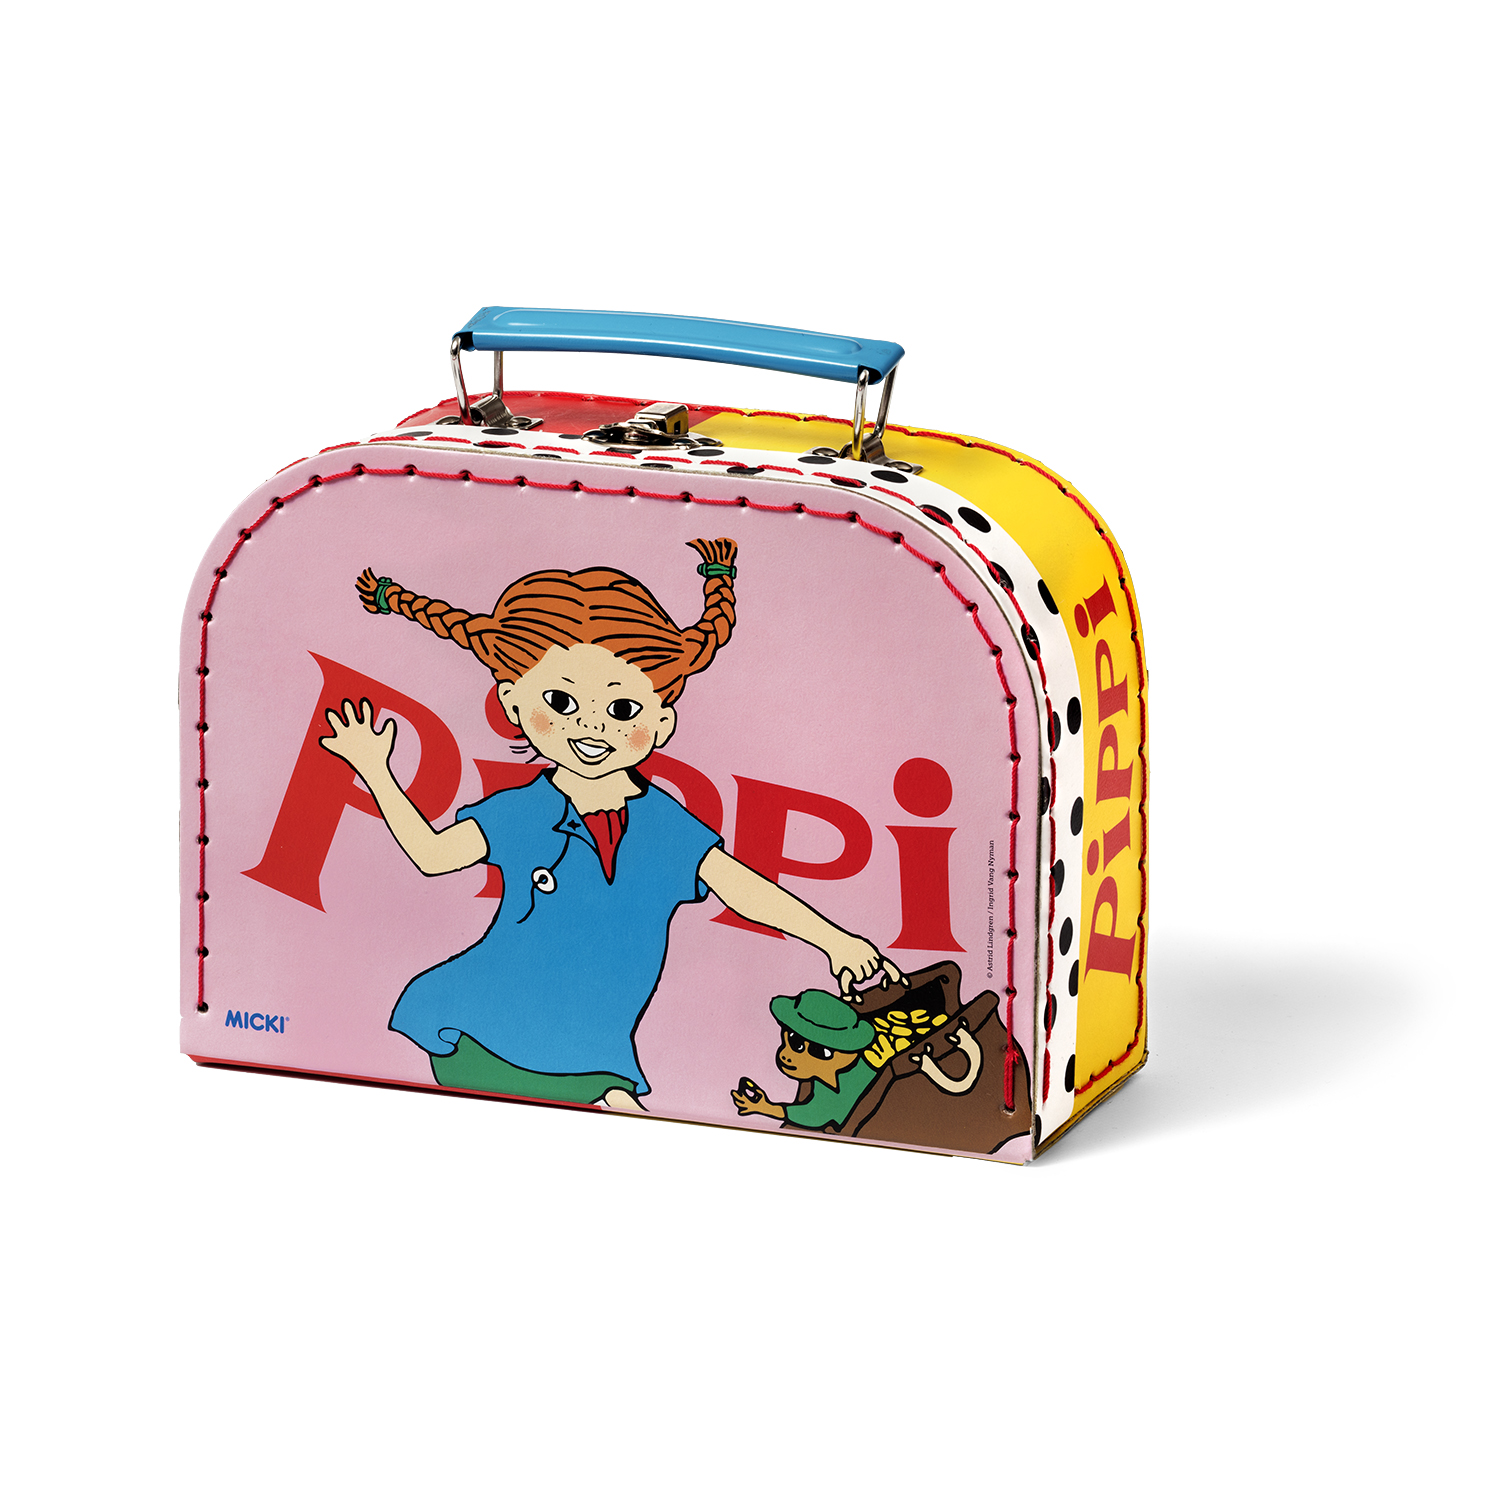 Kindertaschen & Accessoires pippi kindertasche reisetasche 20 cm rosa